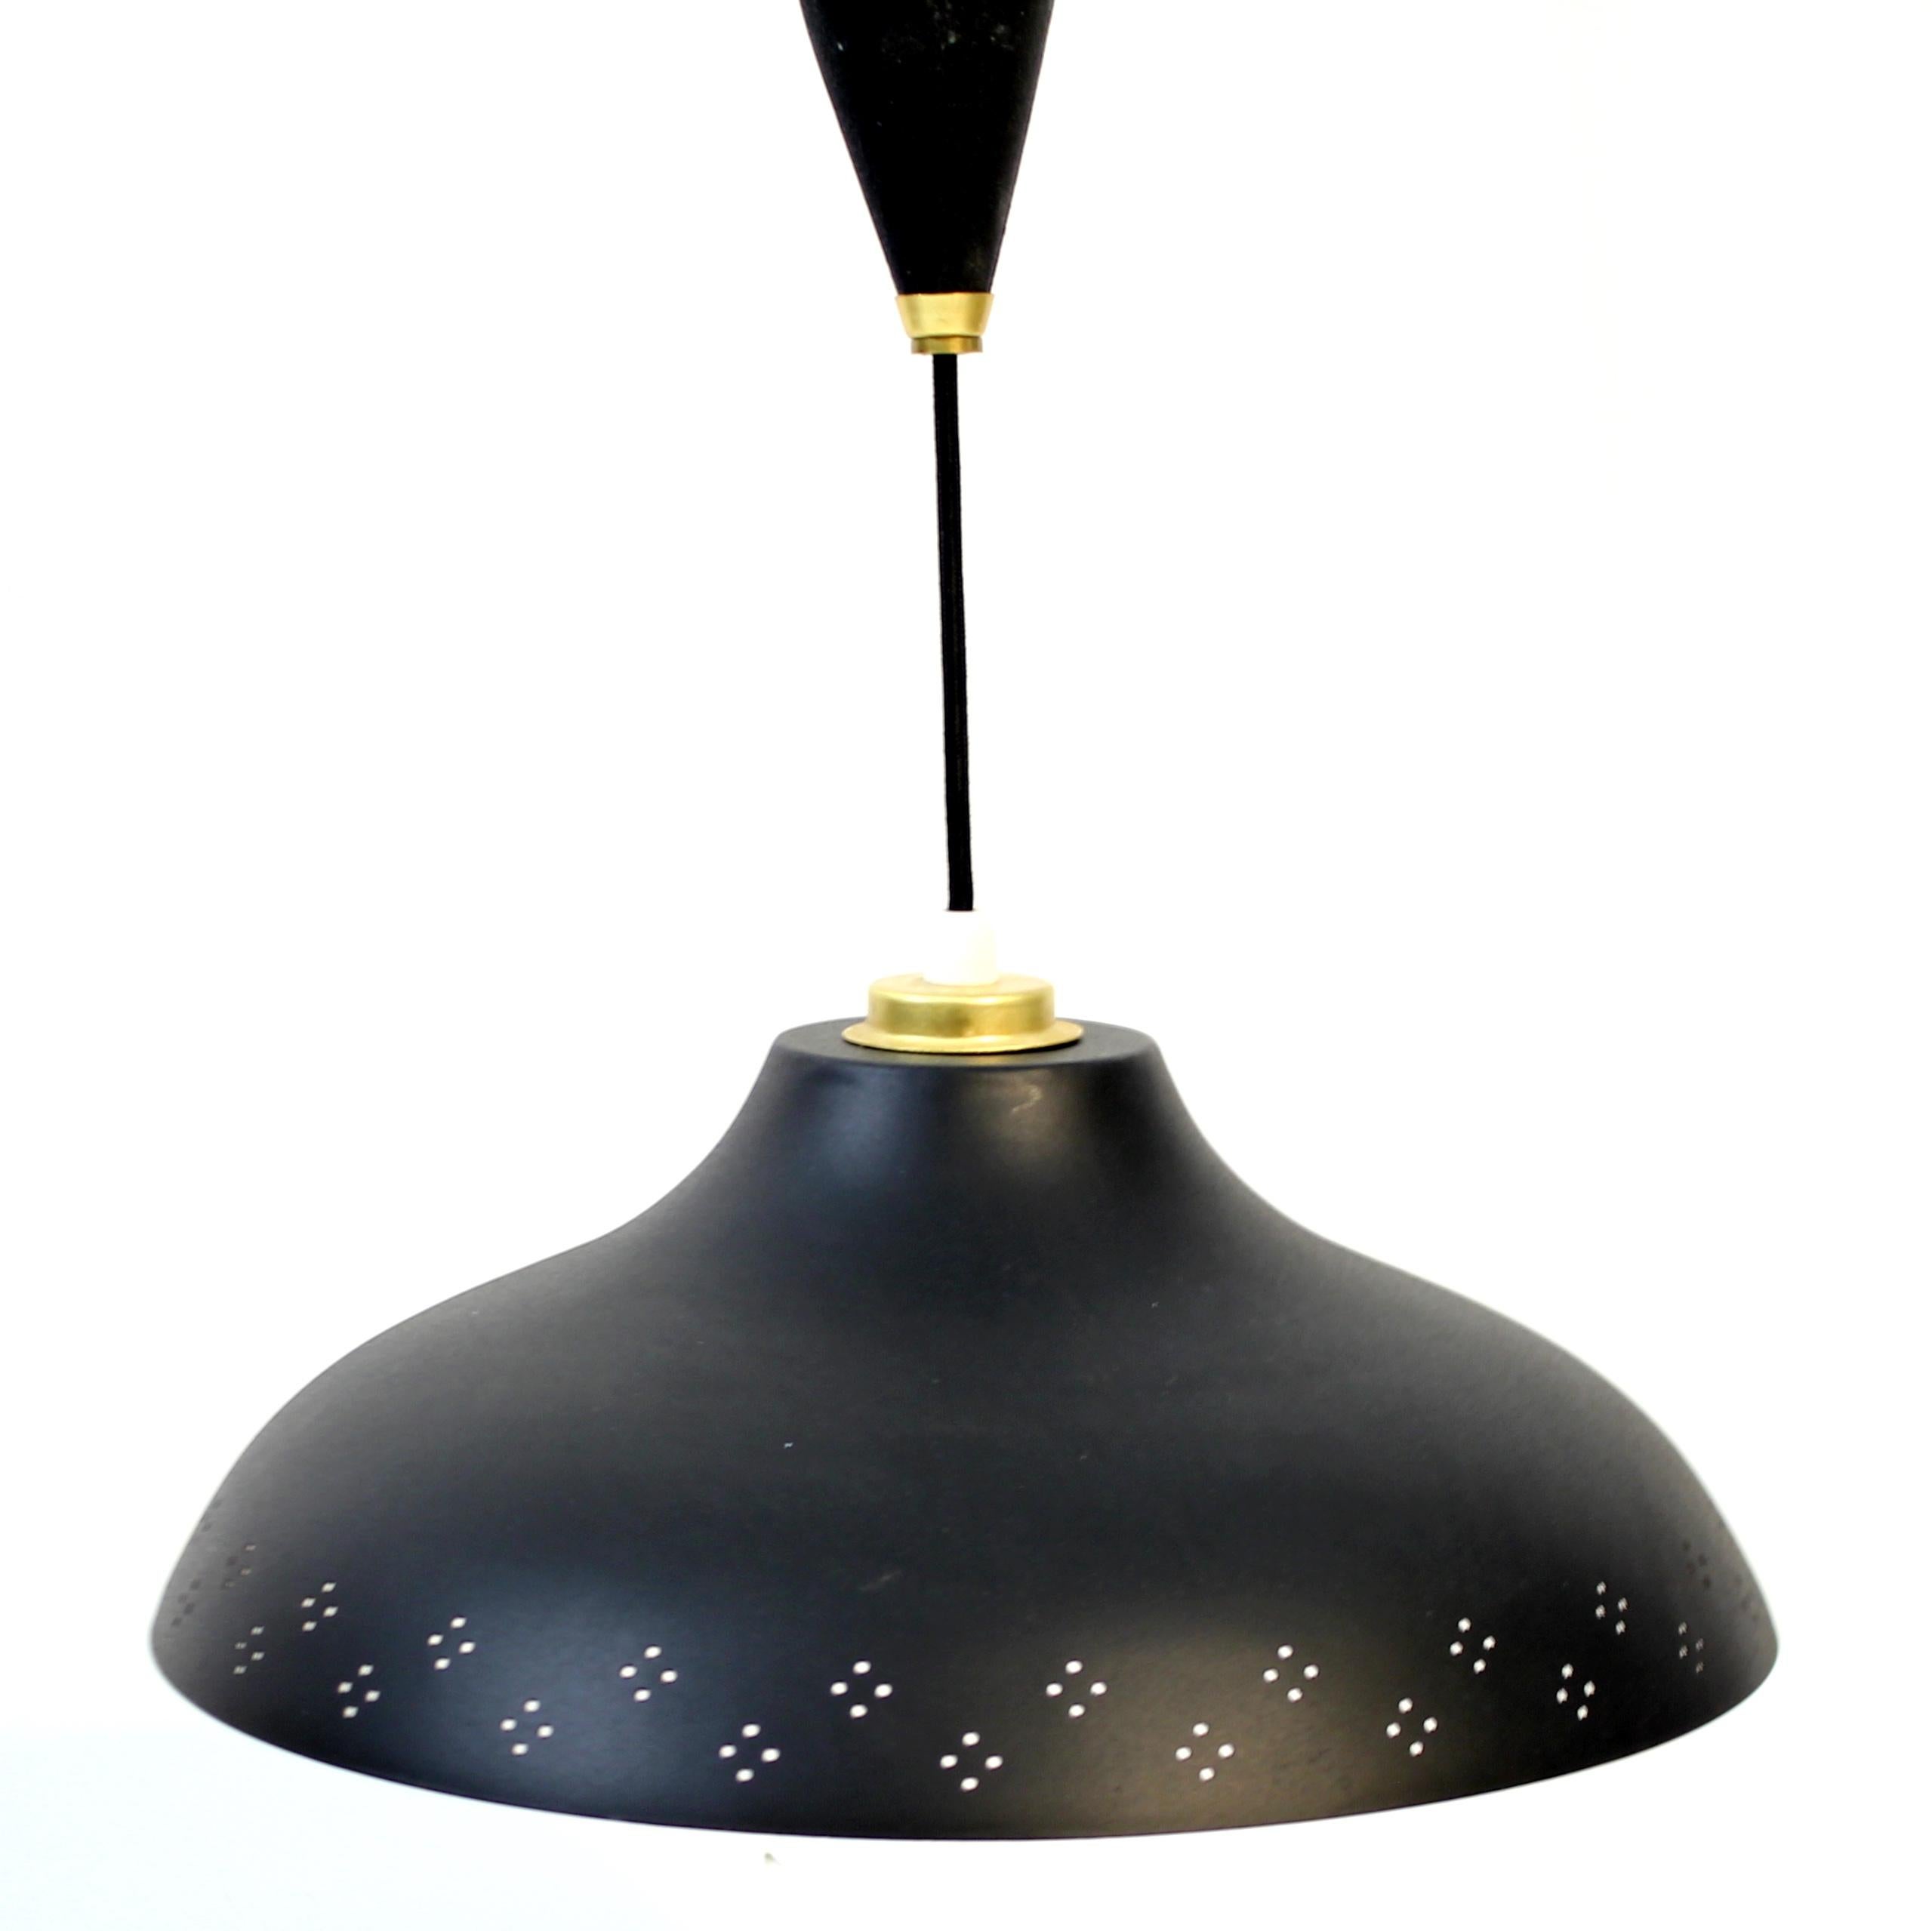 Plafonnier noir conçu par Bertil Brisborg, qui a longtemps dirigé le département éclairage de Nordsika Kompaniet, et produit dans les années 1950. Le modèle est réglable en hauteur entre 92 et 139 cm et est fabriqué en métal avec un tout nouveau